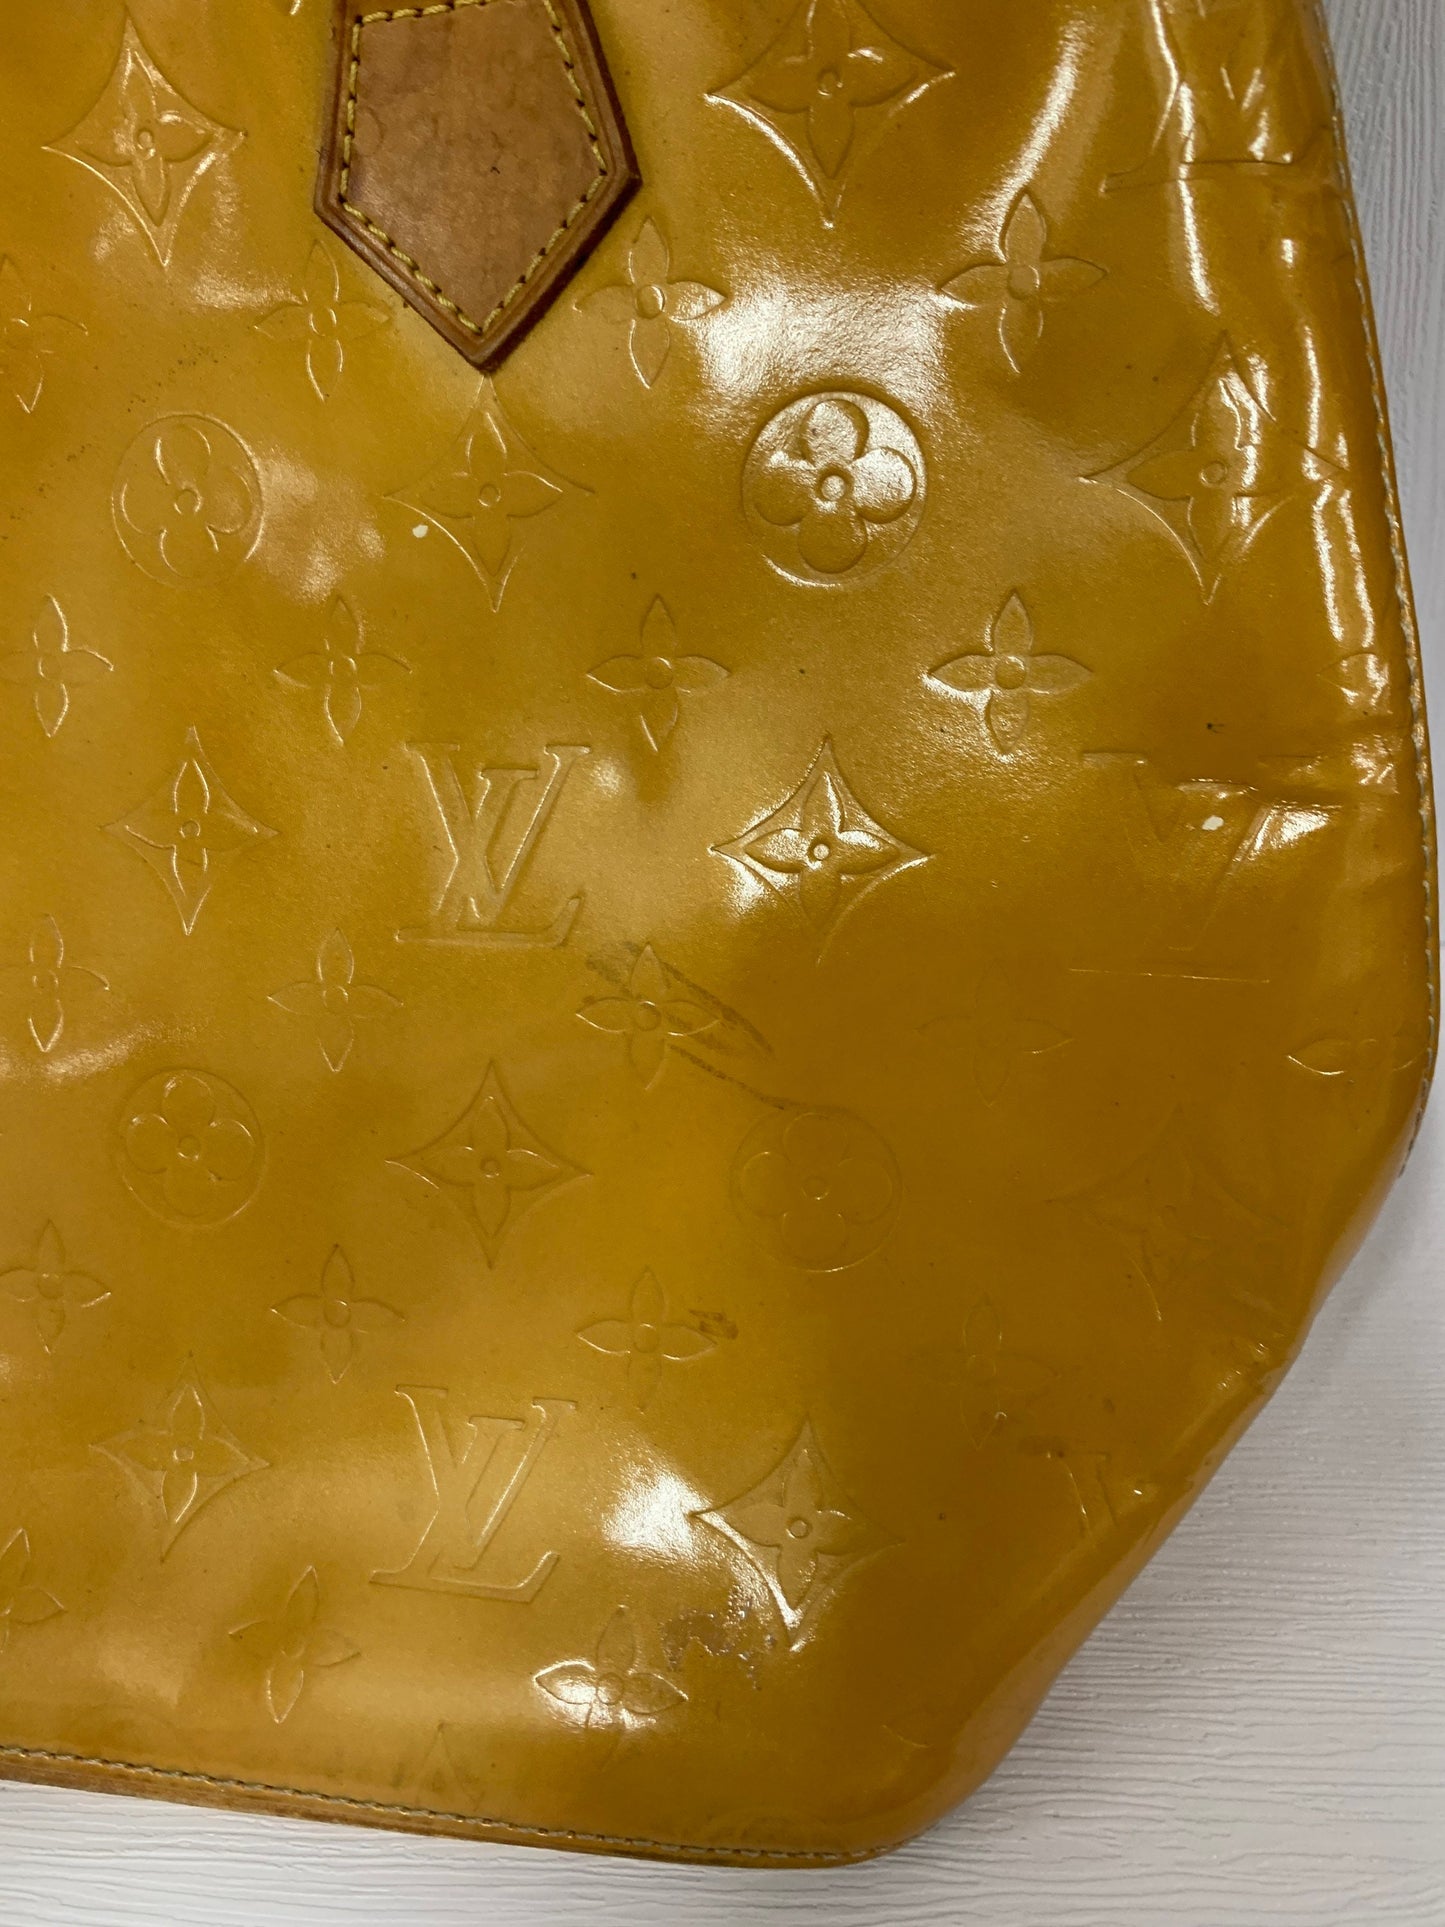 Louis Vuitton yellow Tote Bag 35w x 24H (BbW 65)